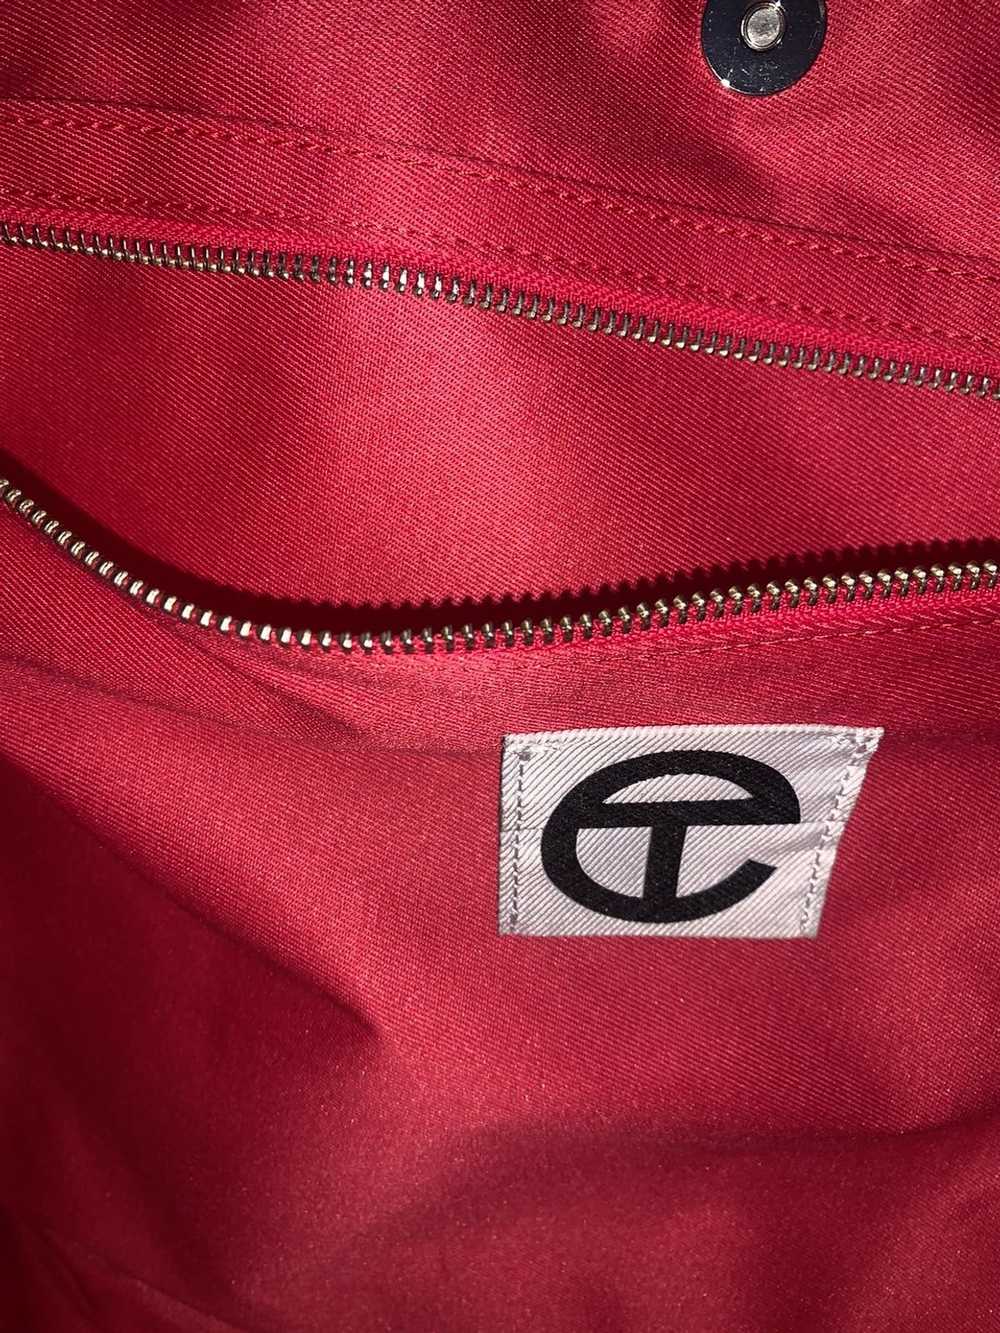 Telfar Telfar Large Red Bag - image 3